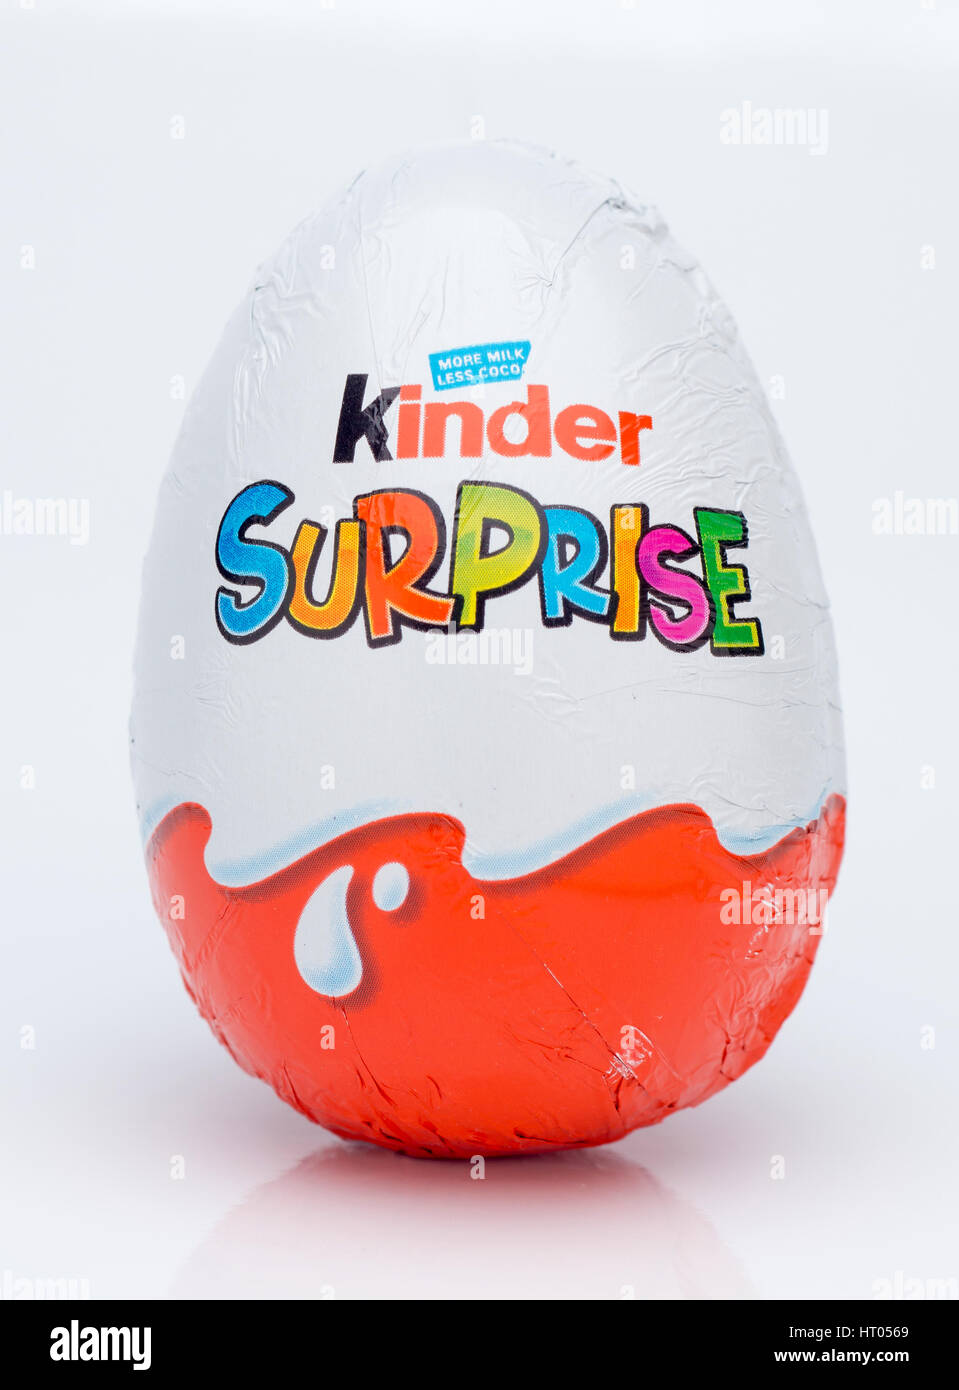 Kinder sorpresa o Kinder huevo es un huevo de chocolate con un juguete dentro, fabricado por la empresa italiana Ferrero desde 1974. Foto de stock